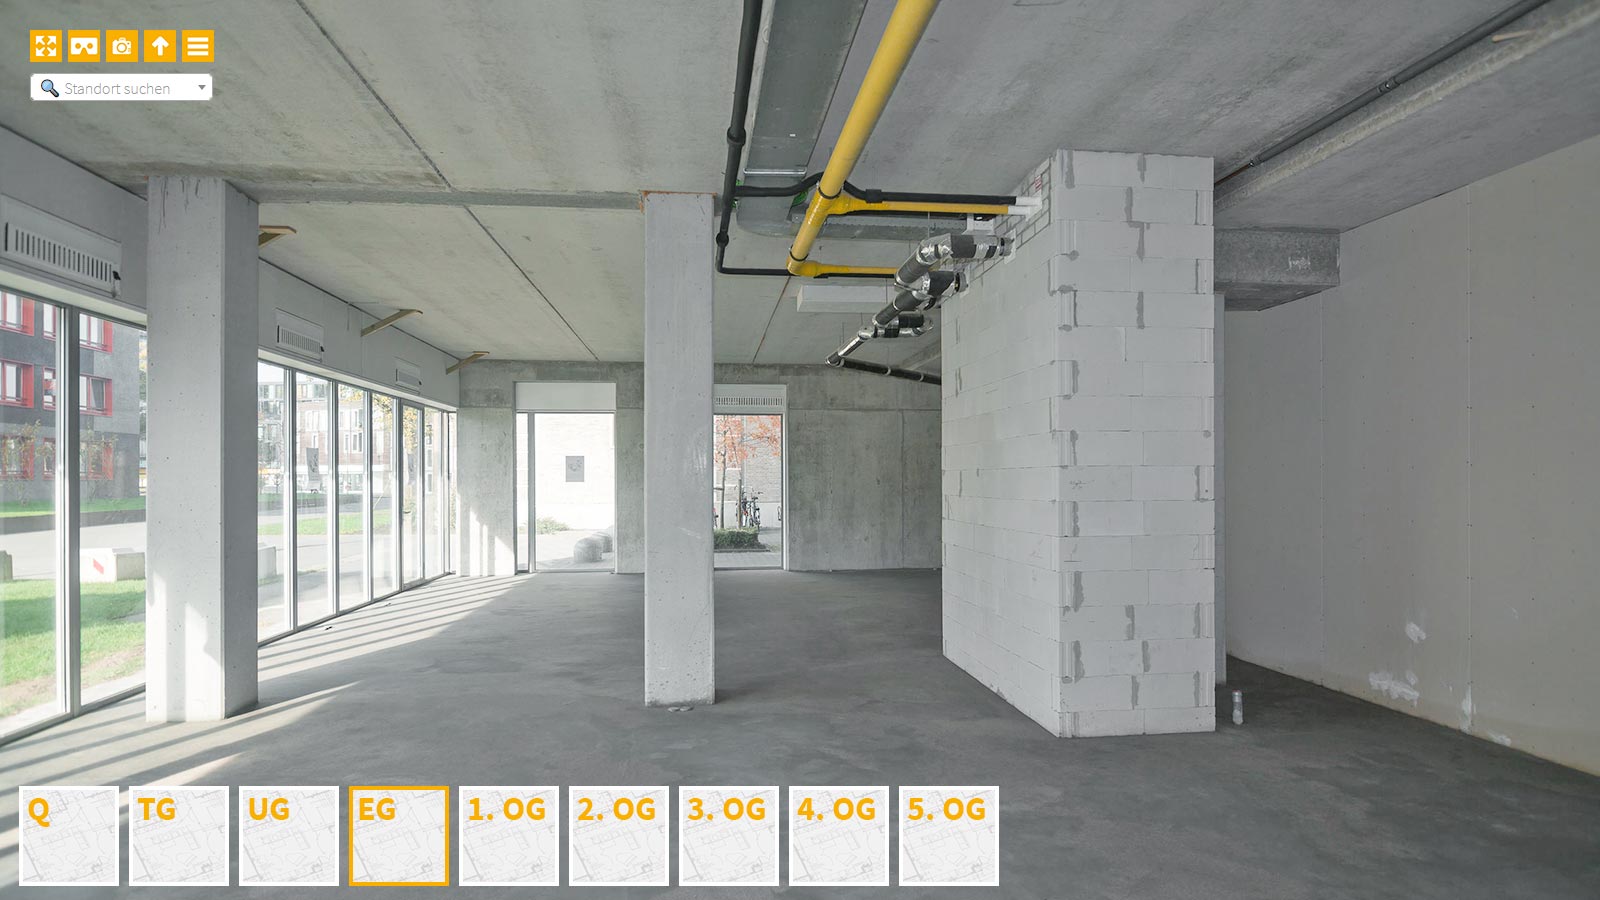 Baudokumentation 360 Grad bei gestörten Projekten in 


	


	


	


	


	


	


	


	


	


	Münster









, Bilddokumentation als virtueller Rundgang